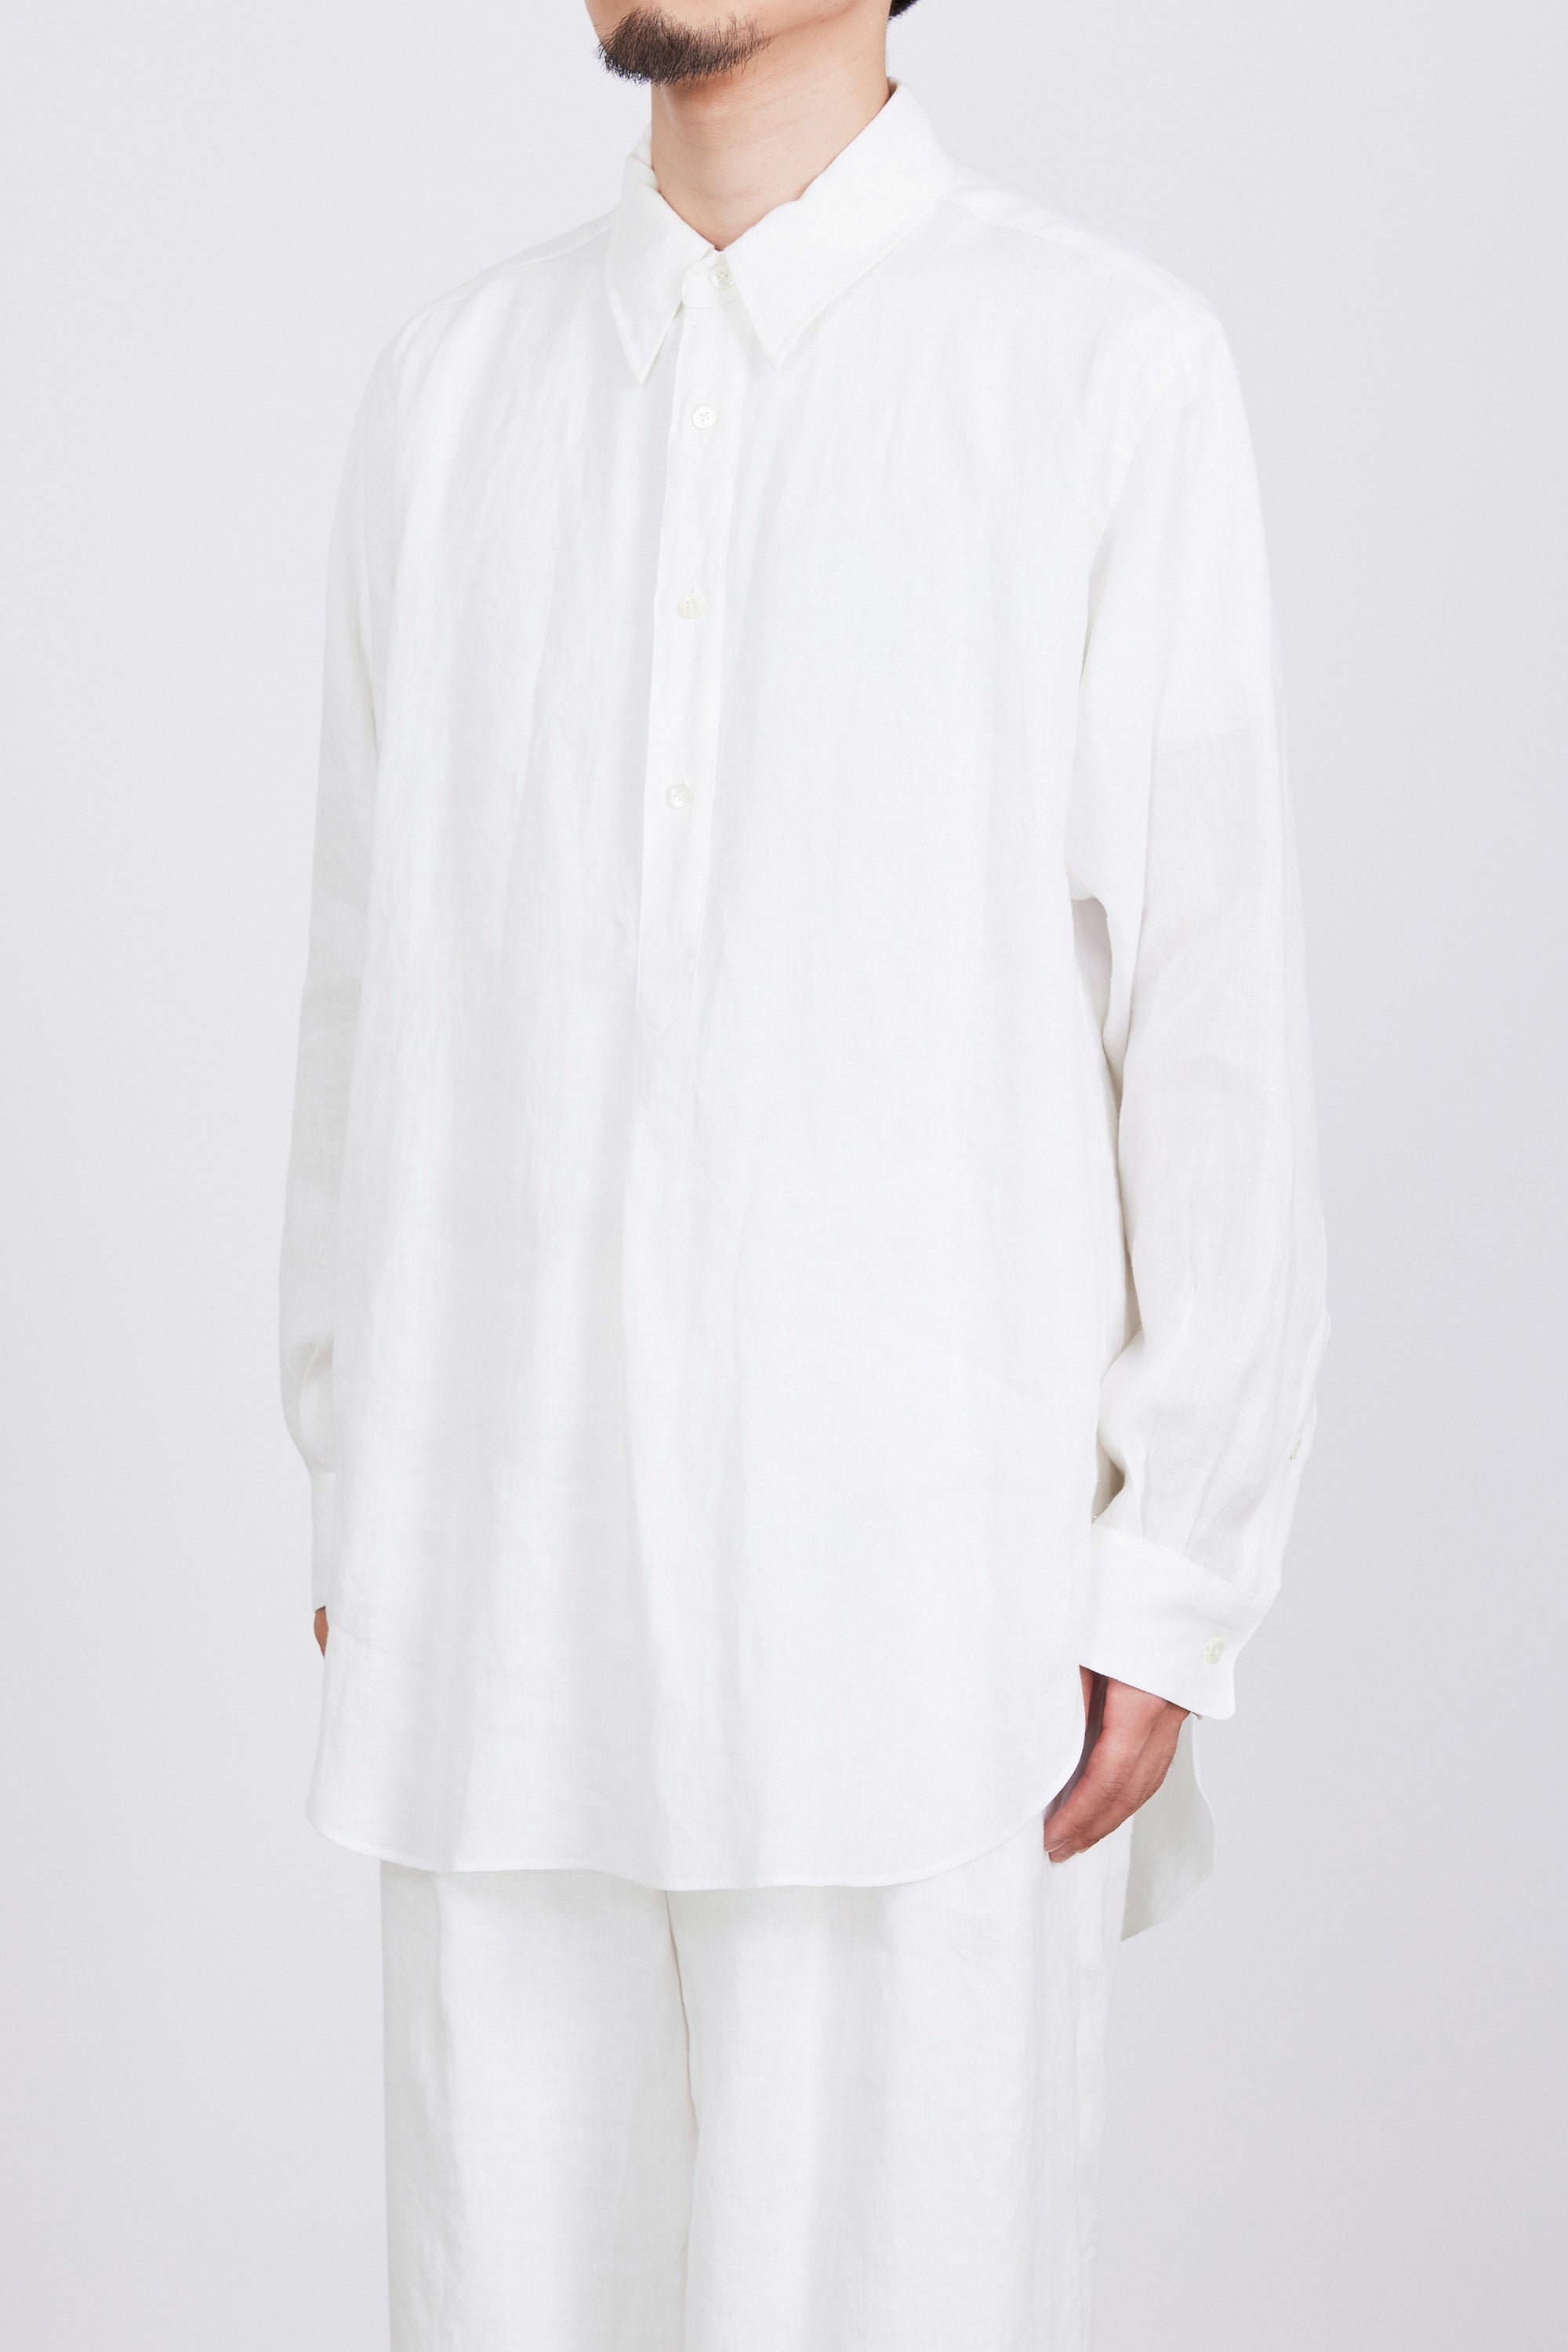 ヘンプ細布 / ダブルカラーロングシャツ, White